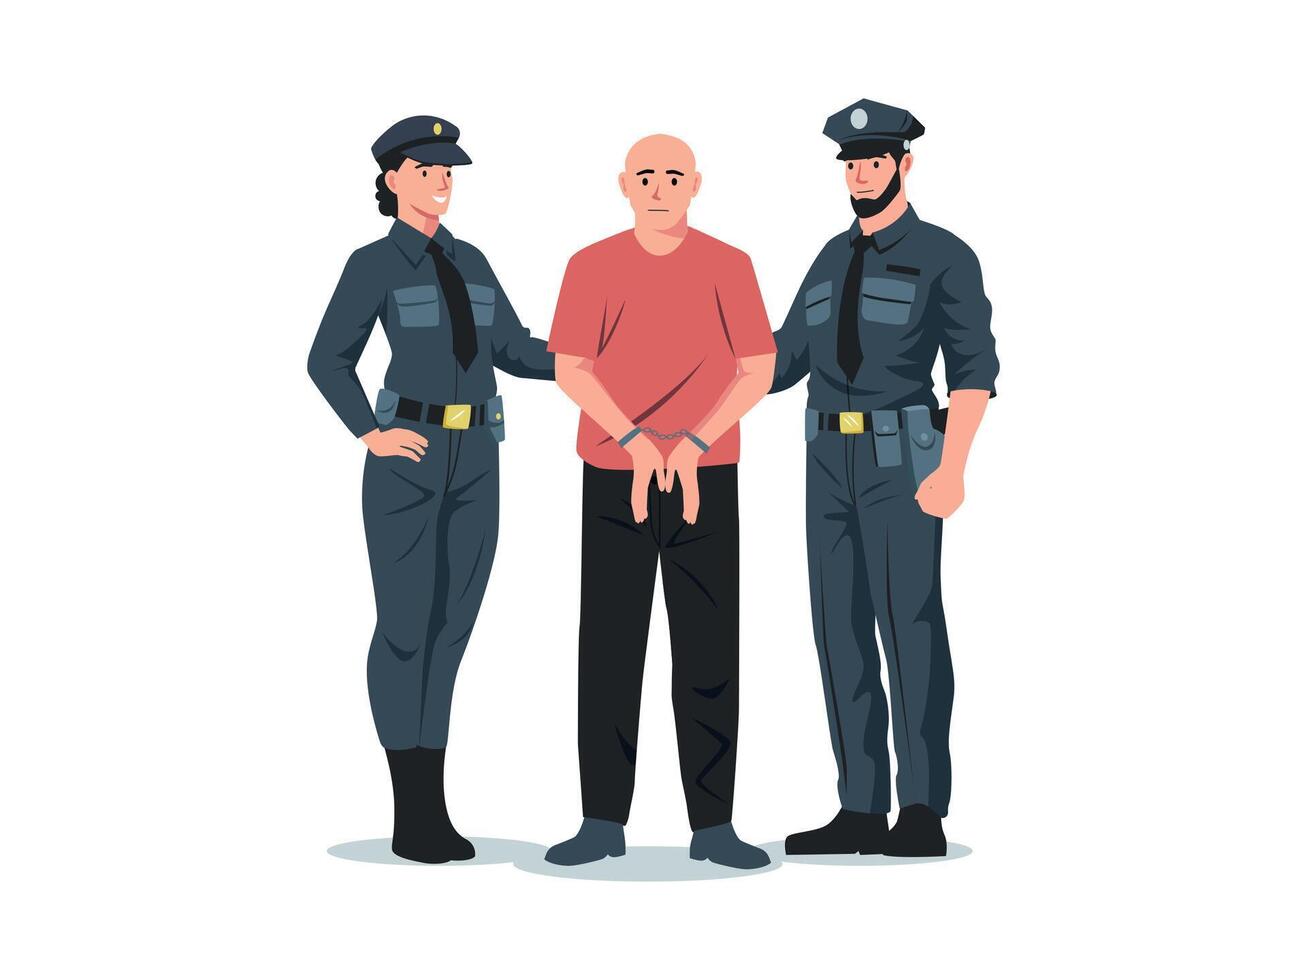 Politie arresteren. politieagent en politievrouw arresteren crimineel met handboeien, tekenfilm detective officieren tekens in uniform gevangen dief. vector illustratie